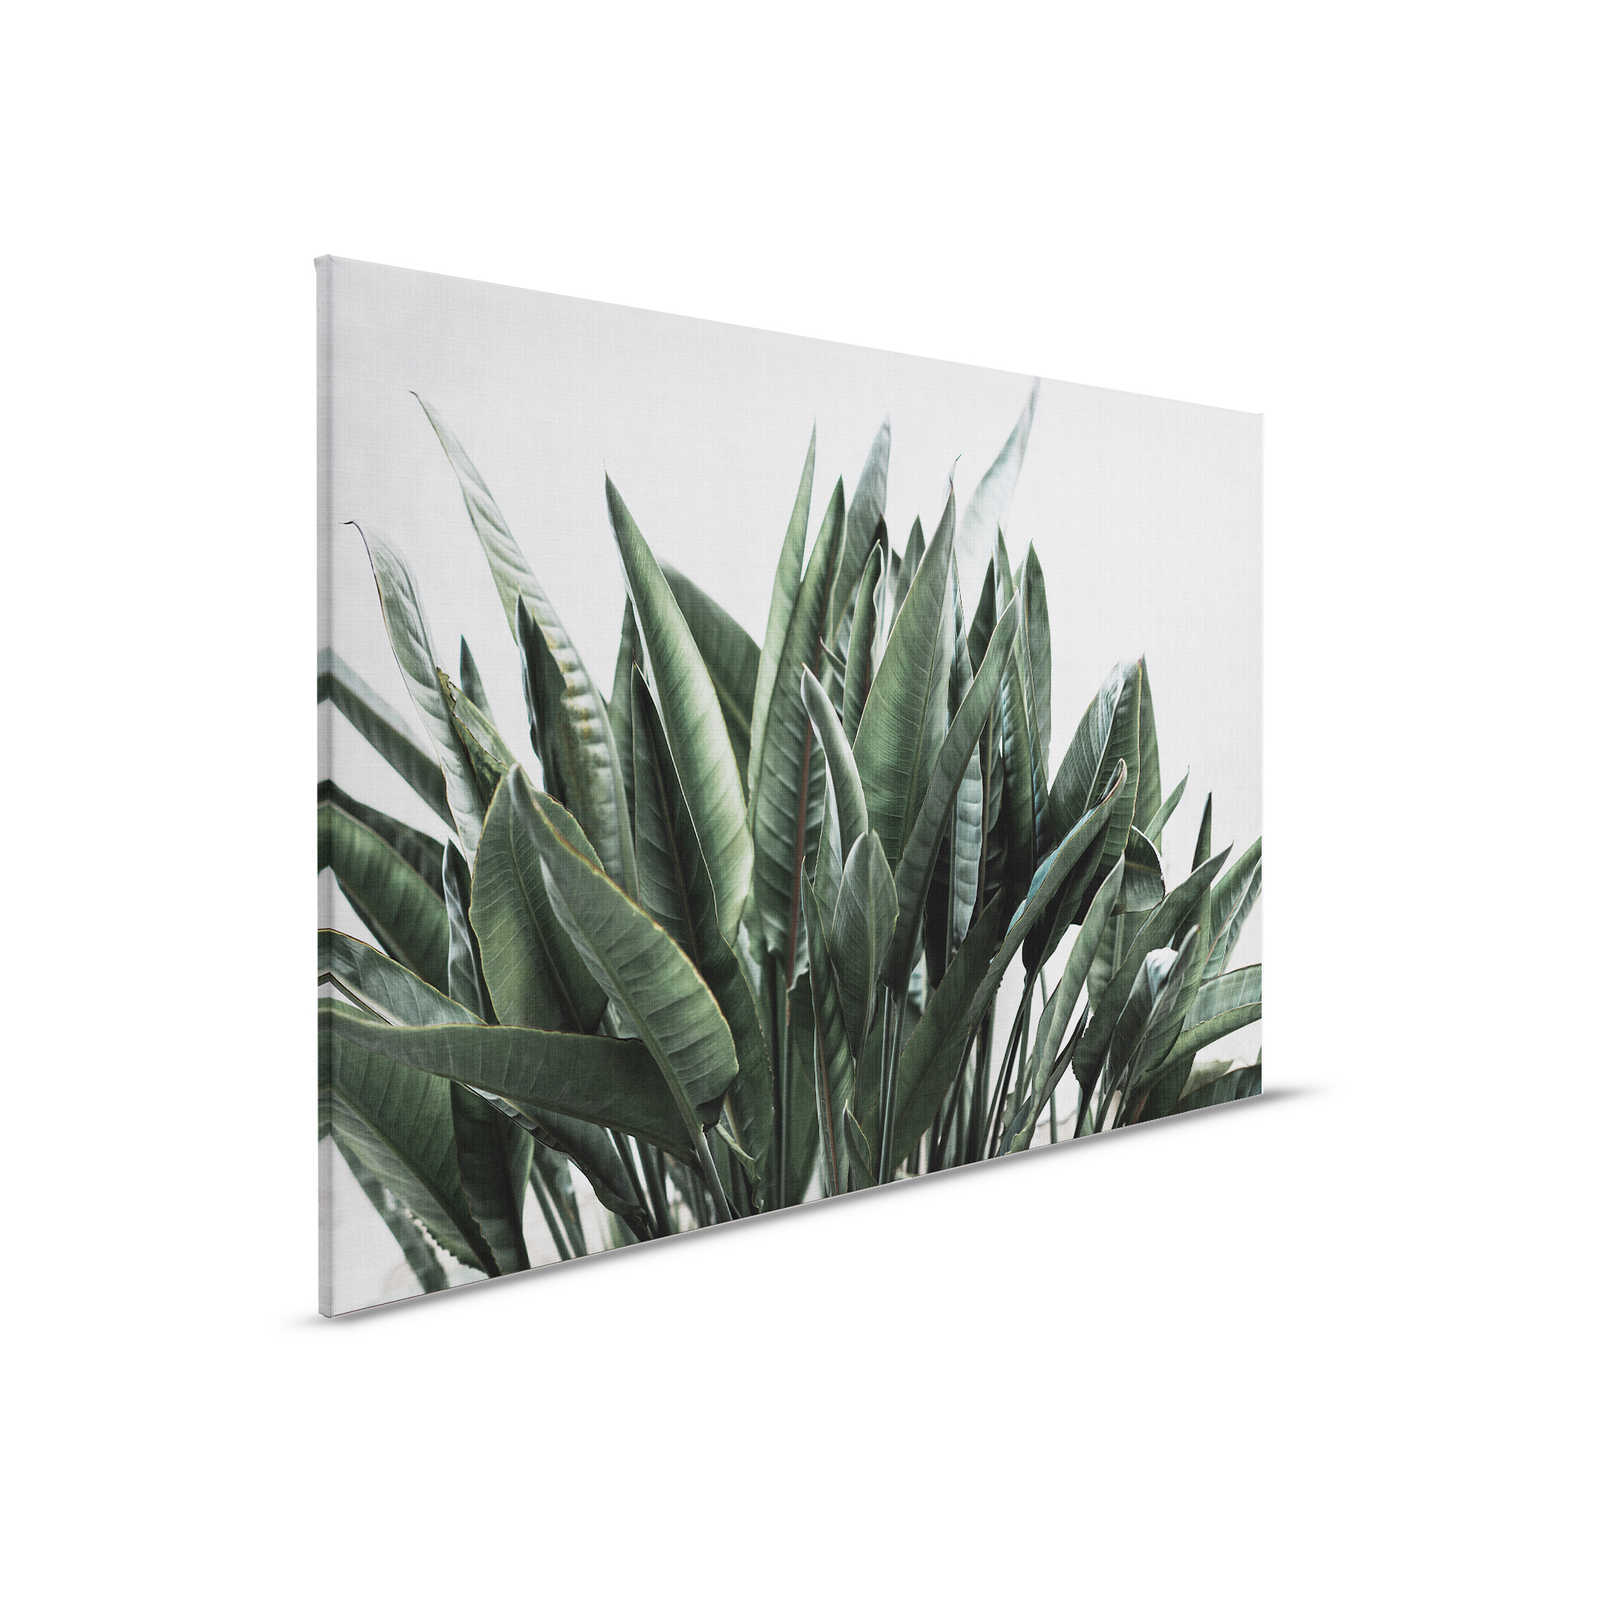 Giungla urbana 2 - Quadro su tela con foglie di palma, struttura in lino naturale piante esotiche - 0,90 m x 0,60 m
